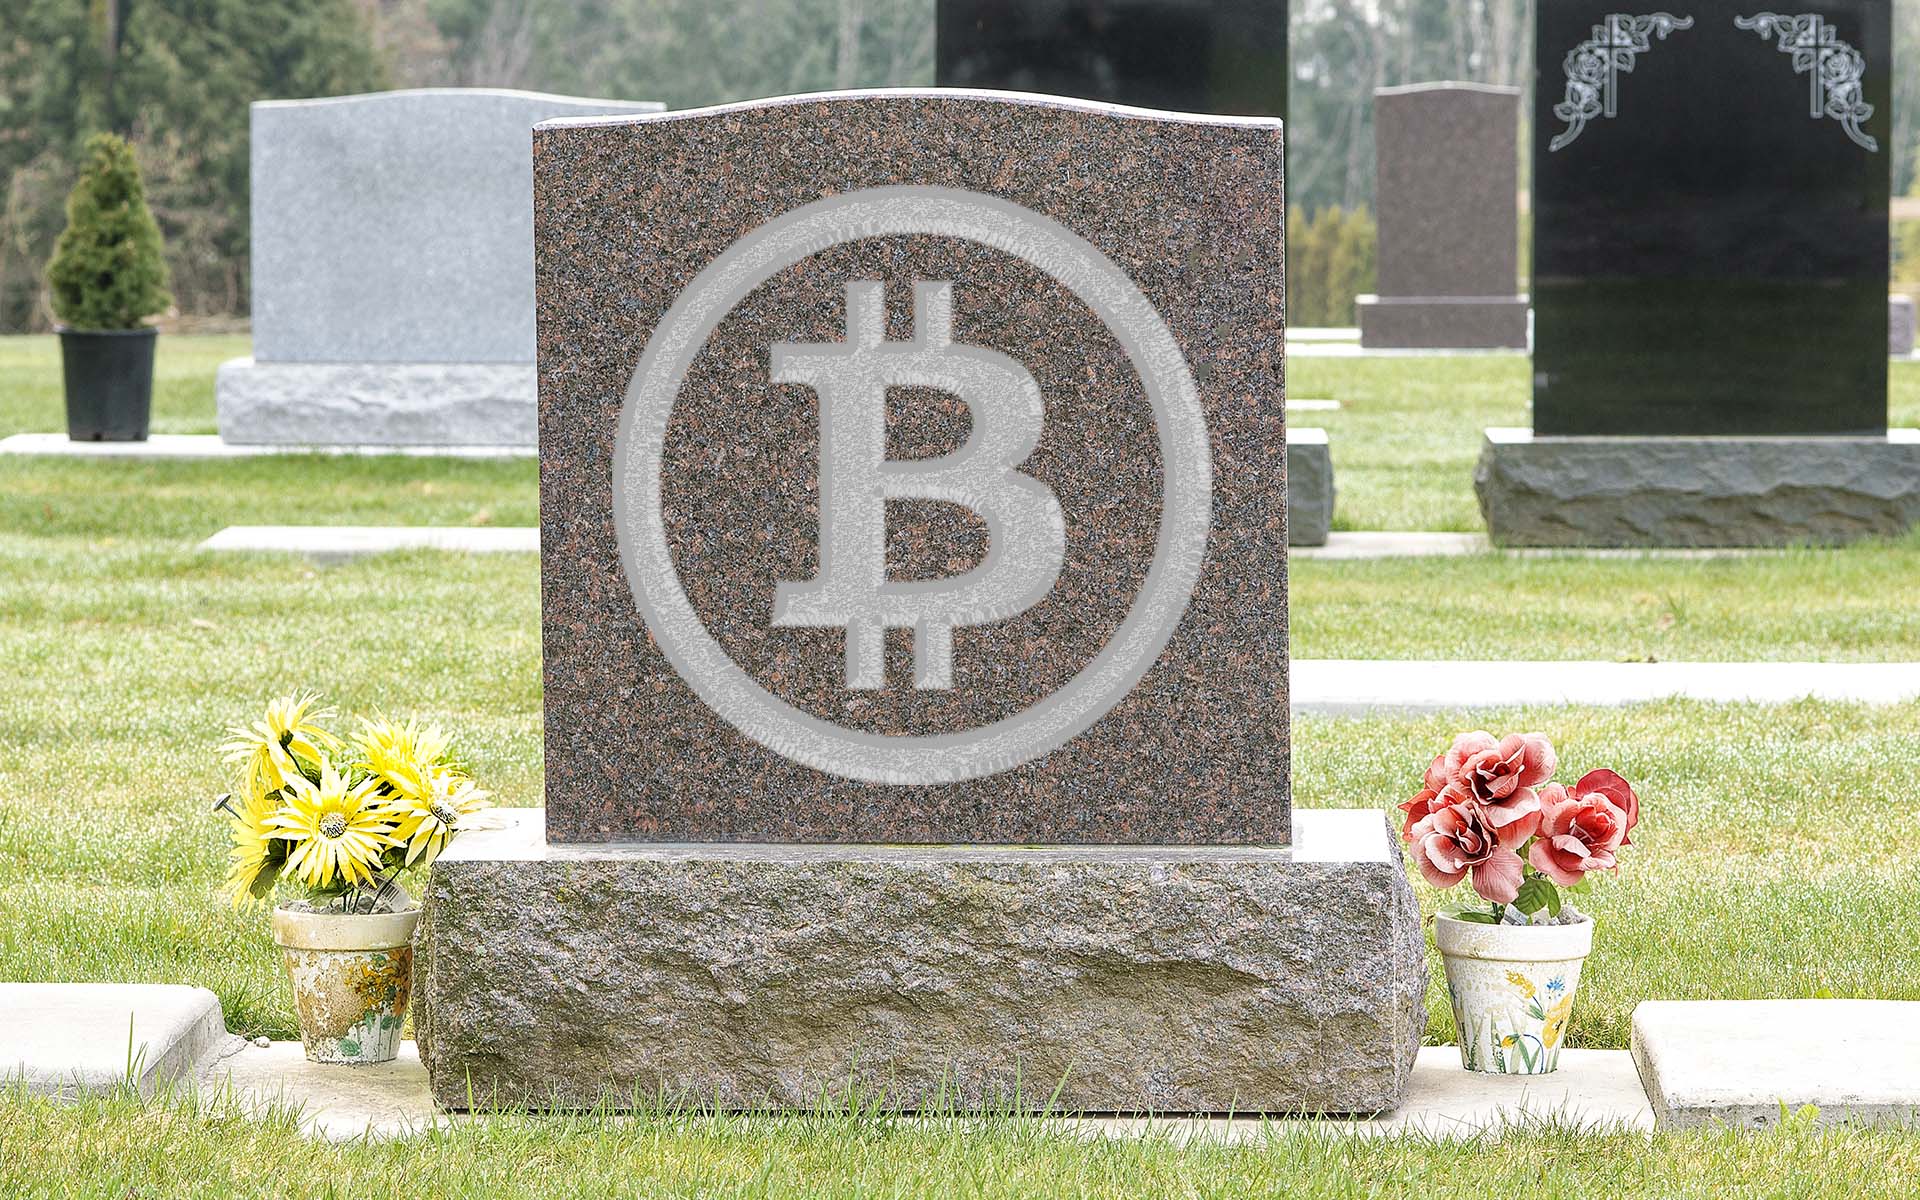 Sống dai như Bitcoin: Bị trù ẻo là ‘đã chết’ 402 lần từ khi ra đời, năm đỉnh điểm bị đồn tới 124 lần!